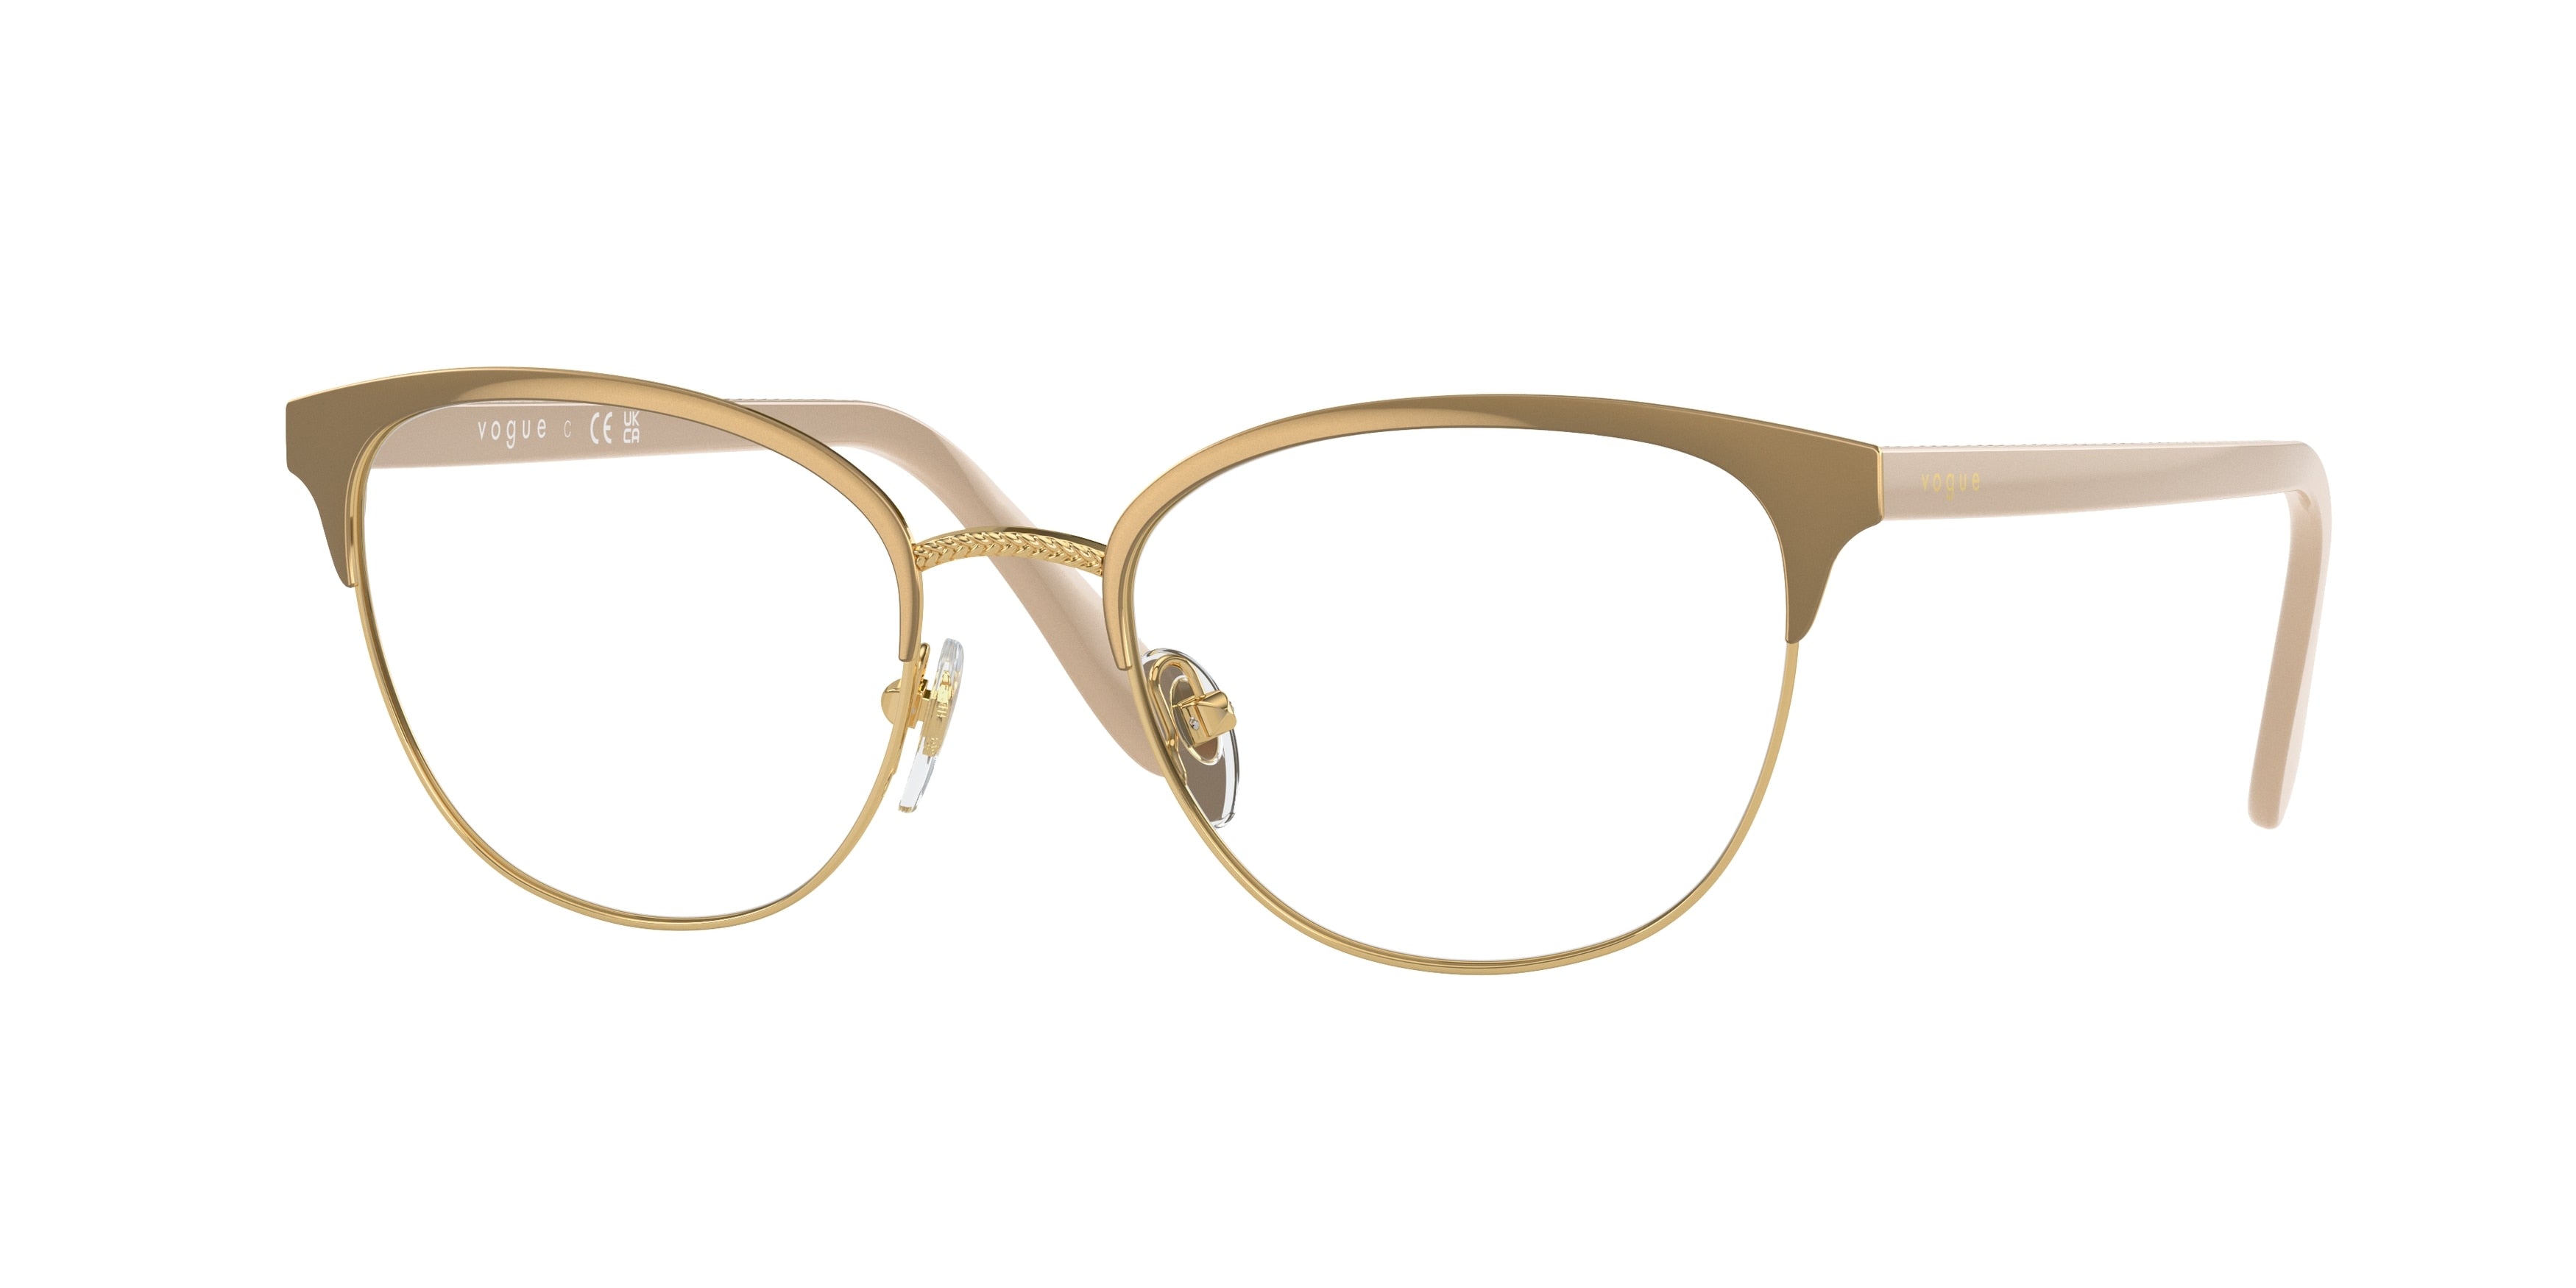 Vogue VO4088 Oval Eyeglasses  5128-Top Beige/Gold 52-140-18 - Color Map Brown